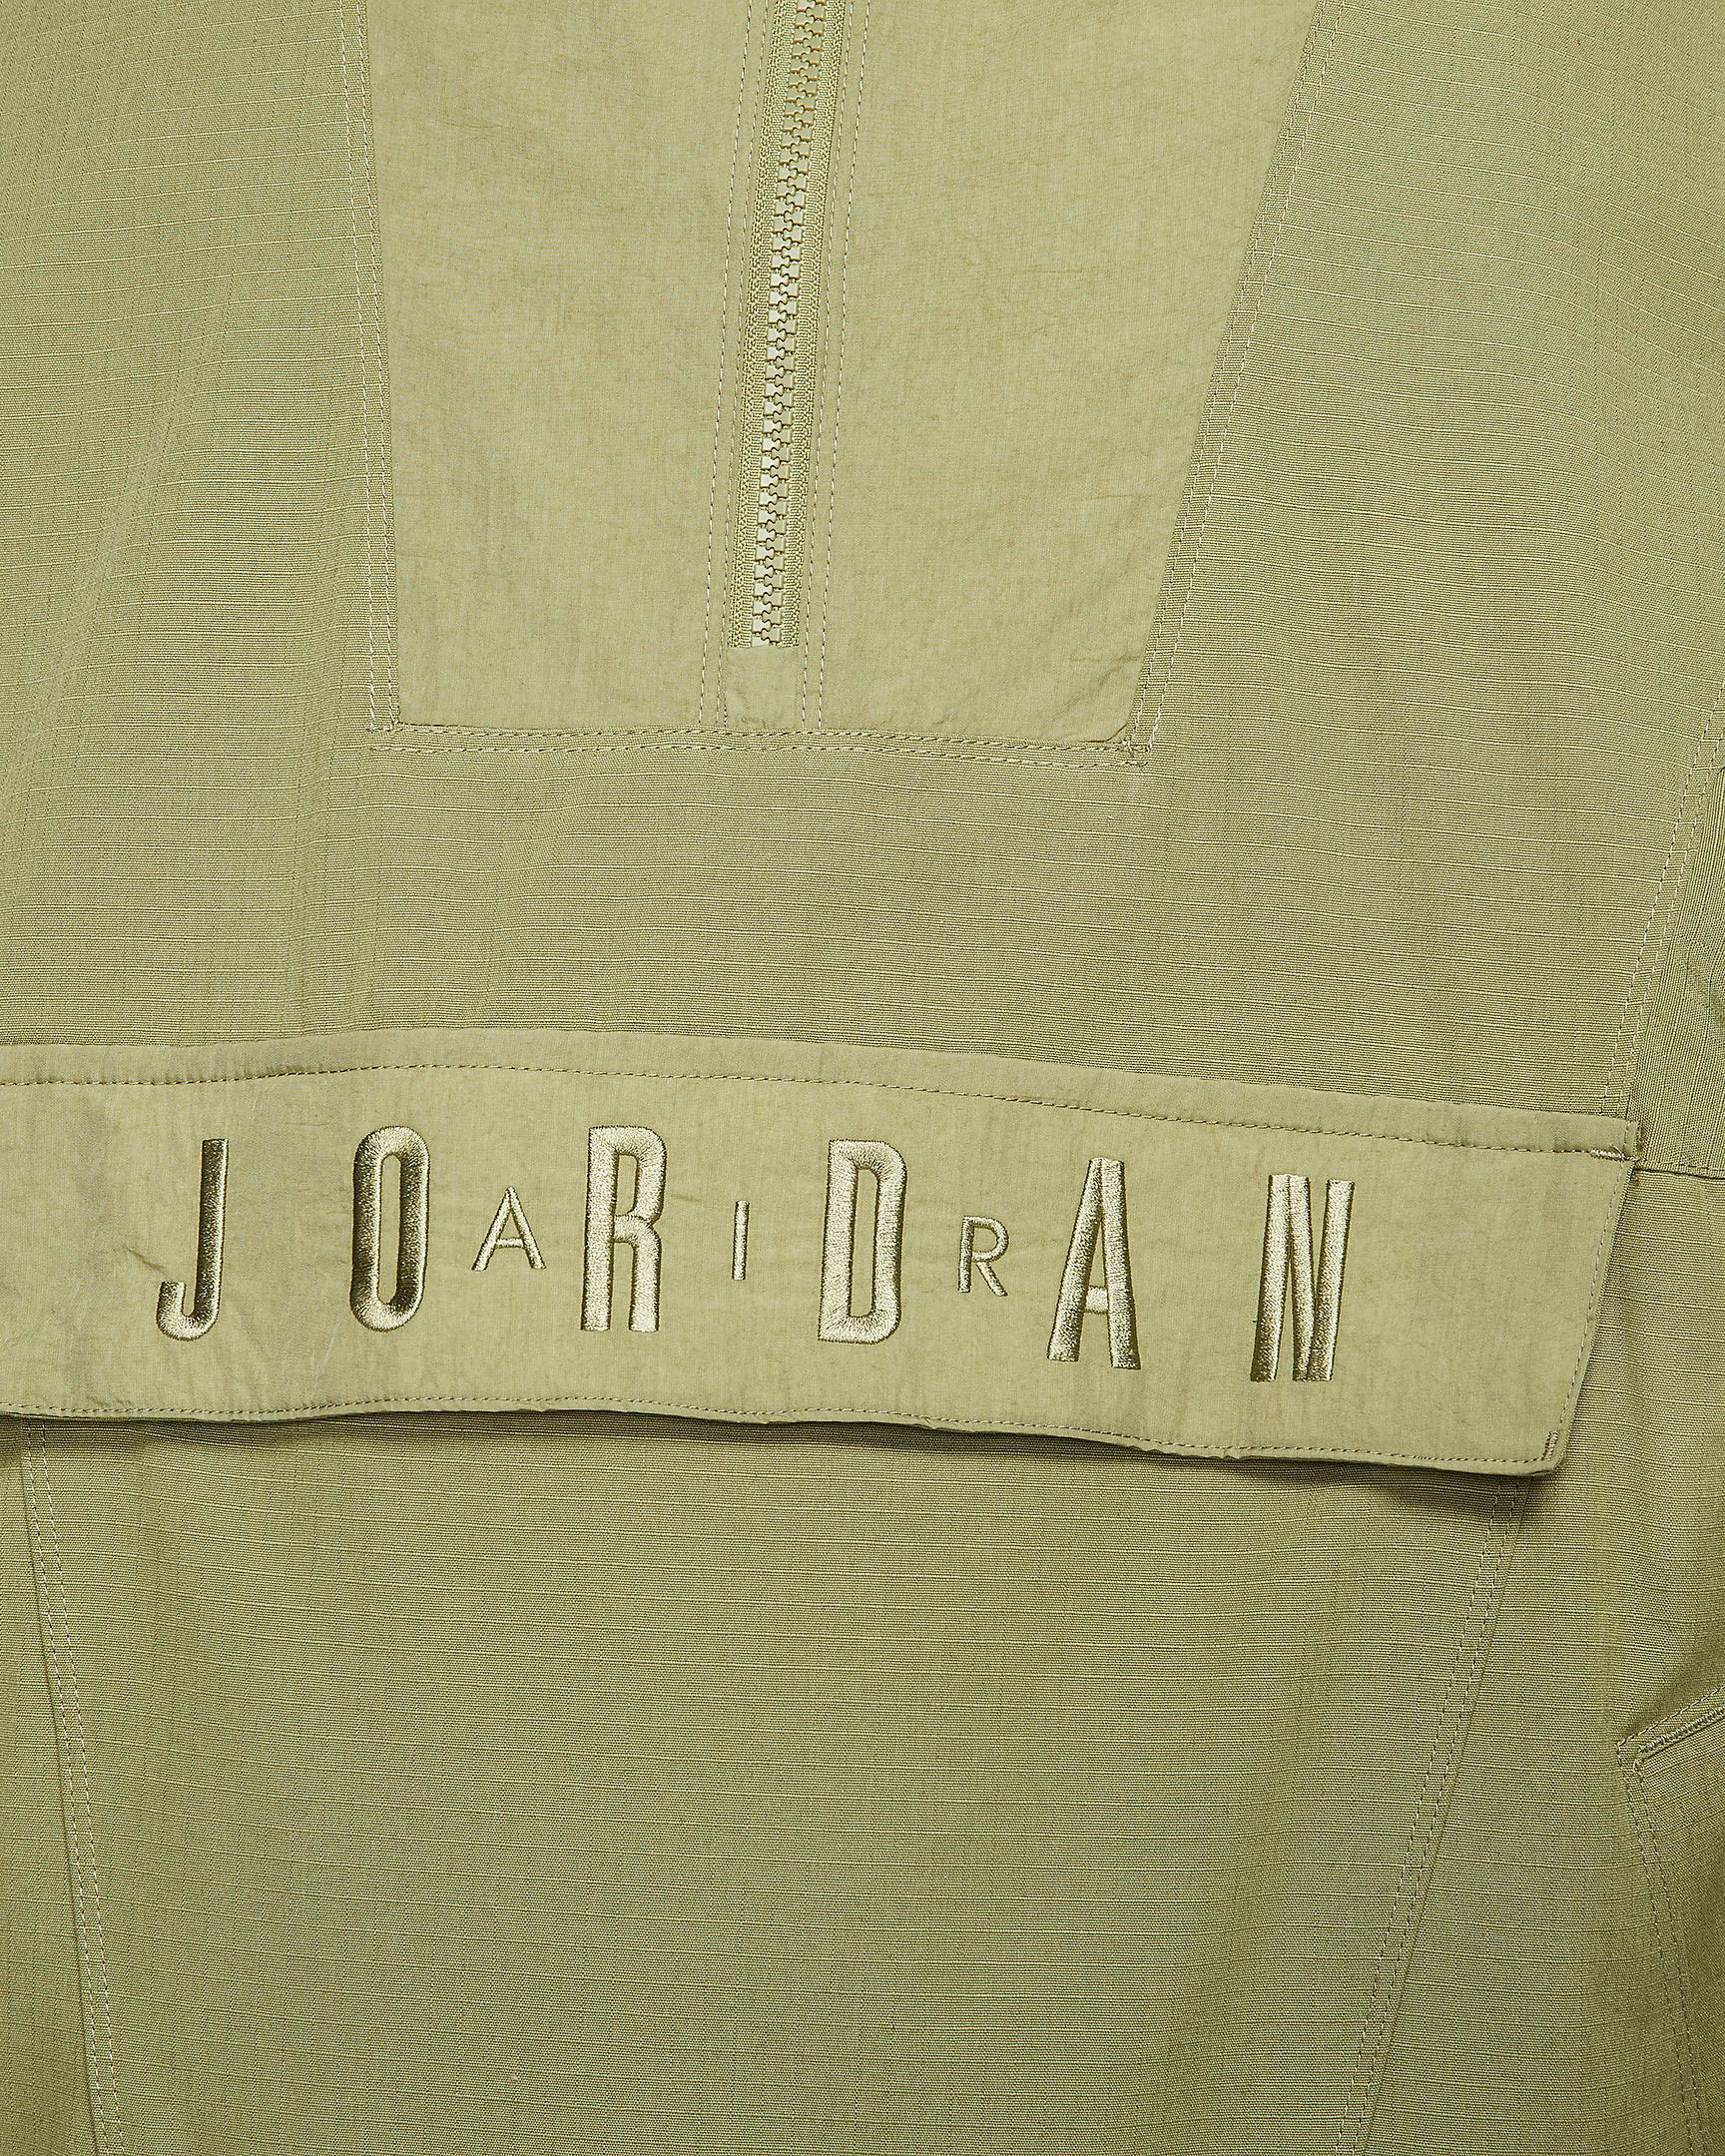 air-jordan-34-bayou-boys-jacket-match-5